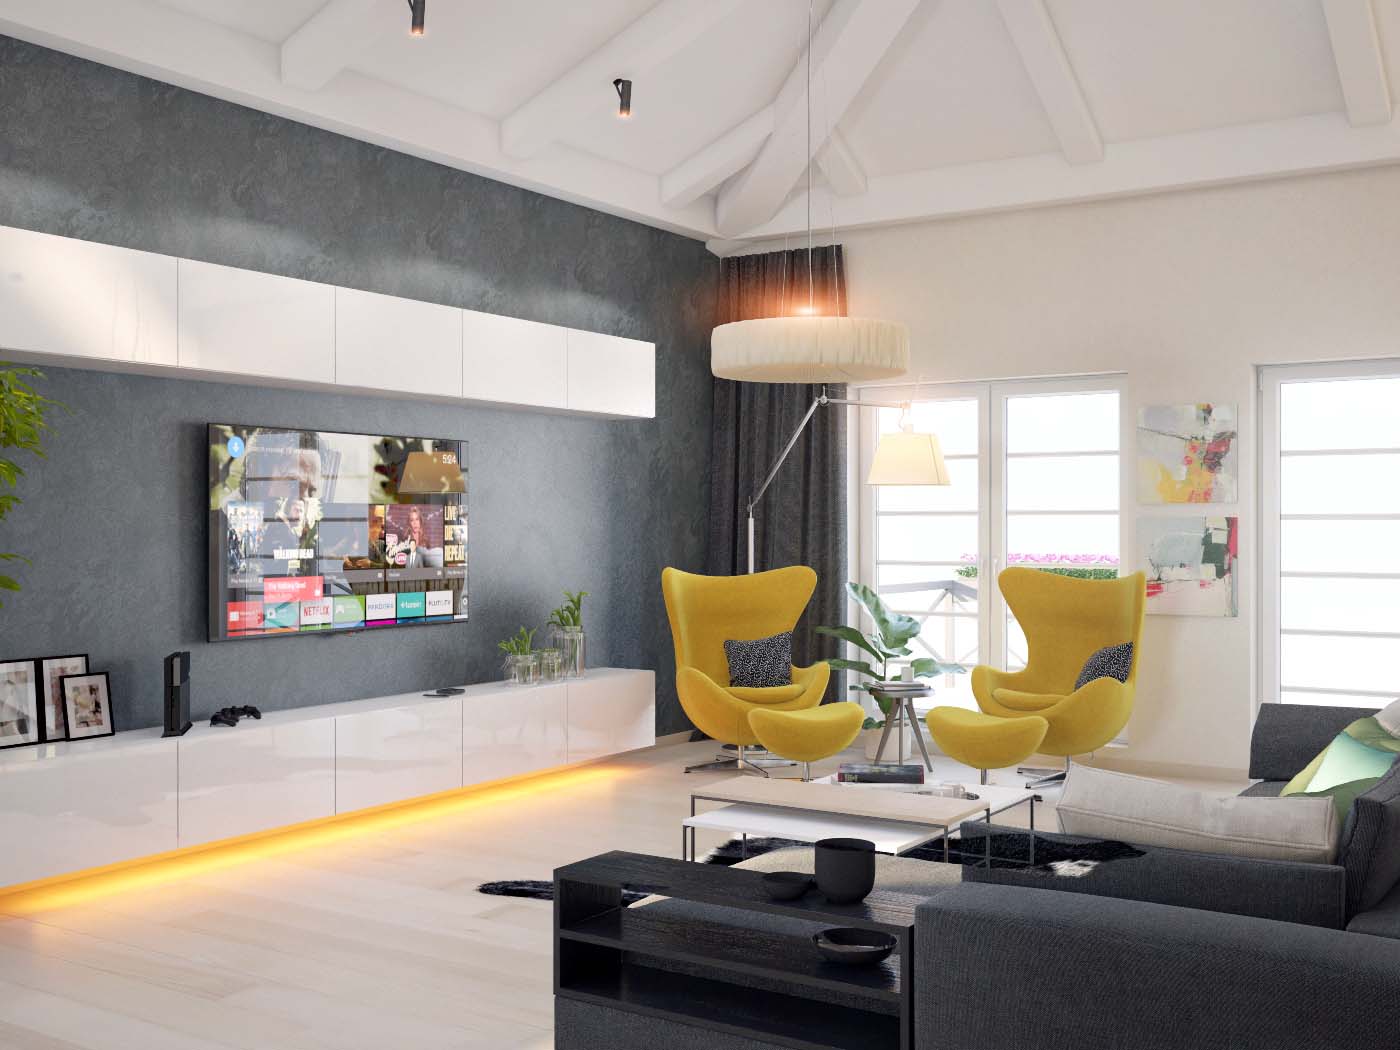 фото соременного интерьера дома с двухсветным пространством кухни и гостиной проекта 243-A1+